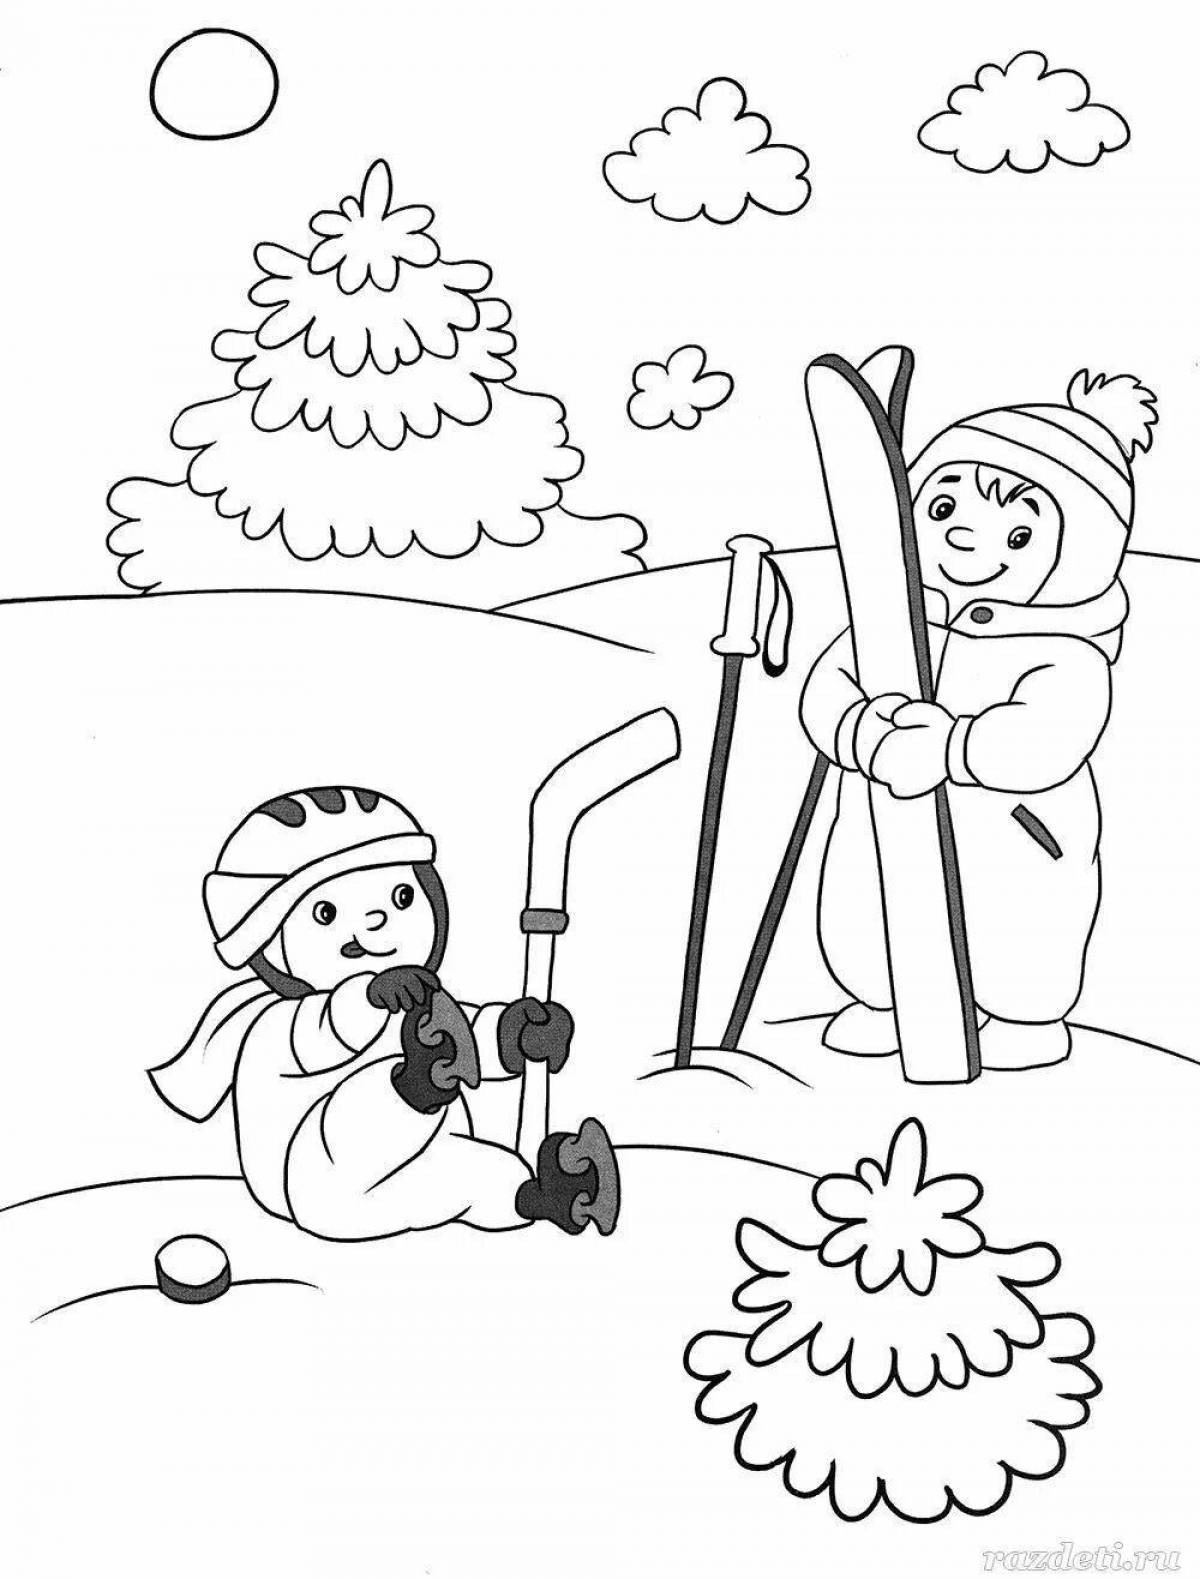 Яркая раскраска зимние развлечения для детей 6 лет